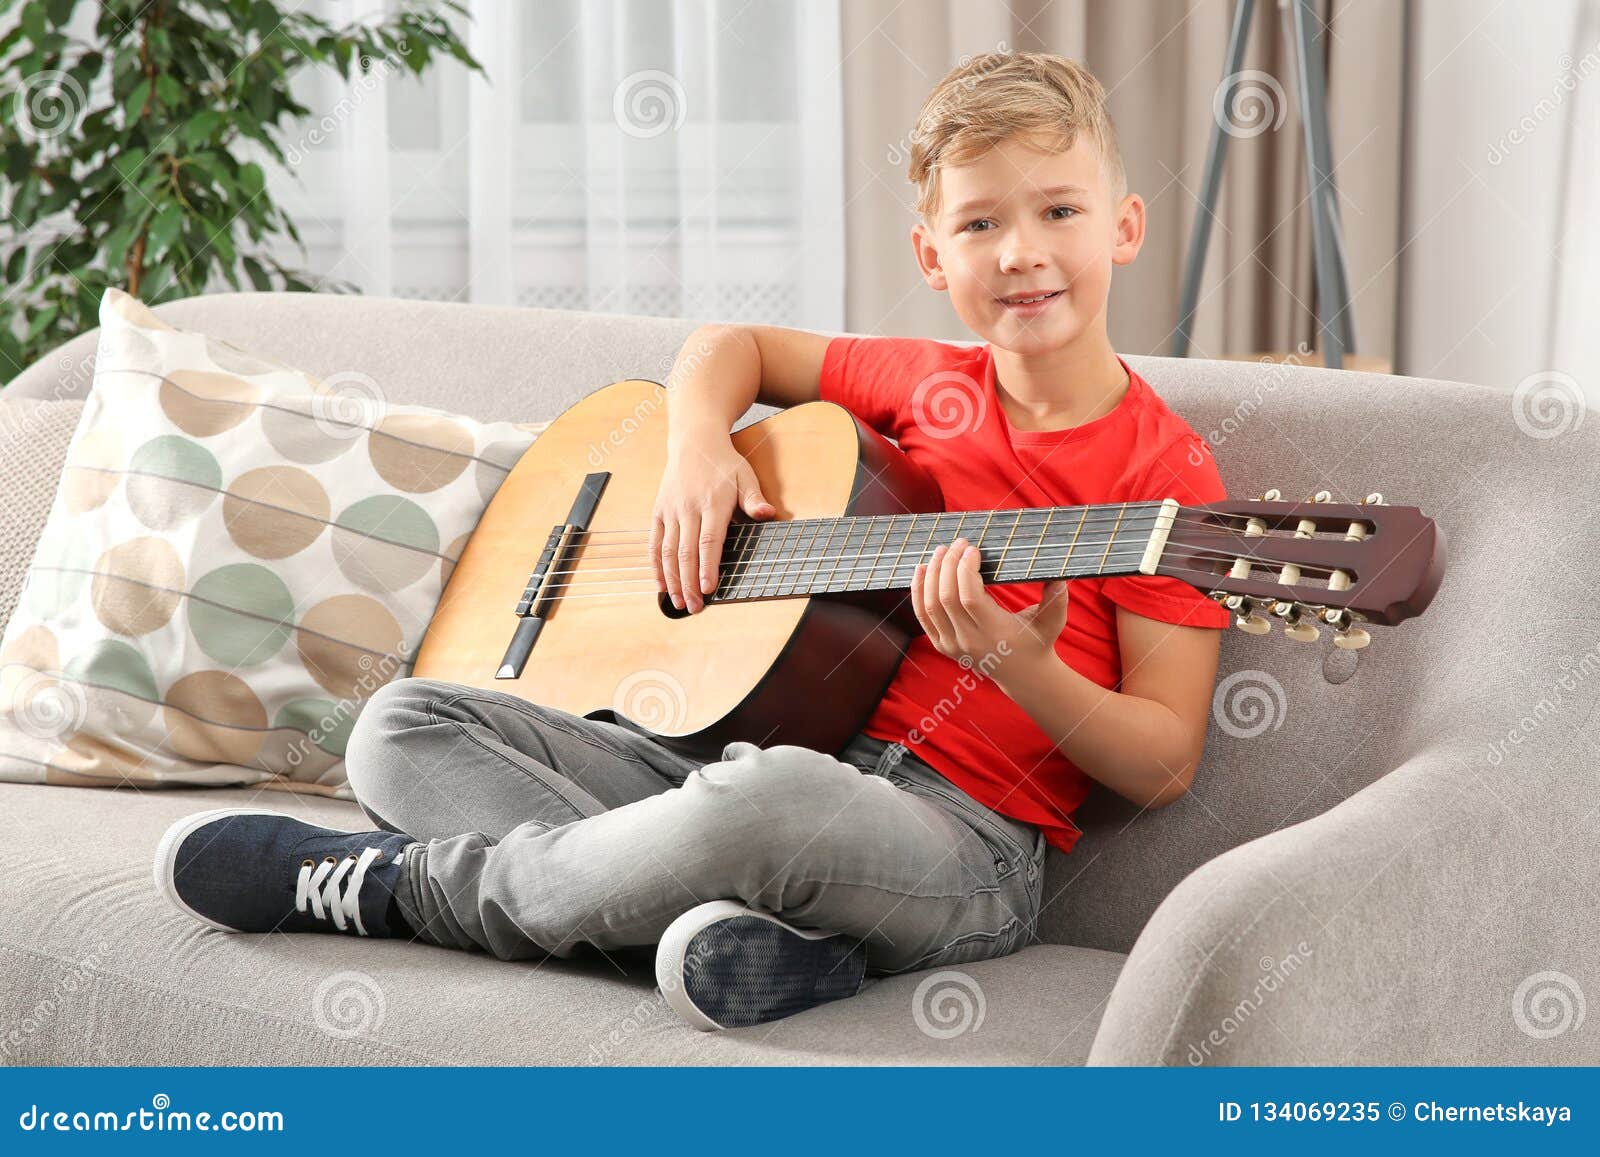 He can play guitar. Гитара для детей. Мальчик играет на гитаре. Дети гитаристы. Электрогитара для детей.